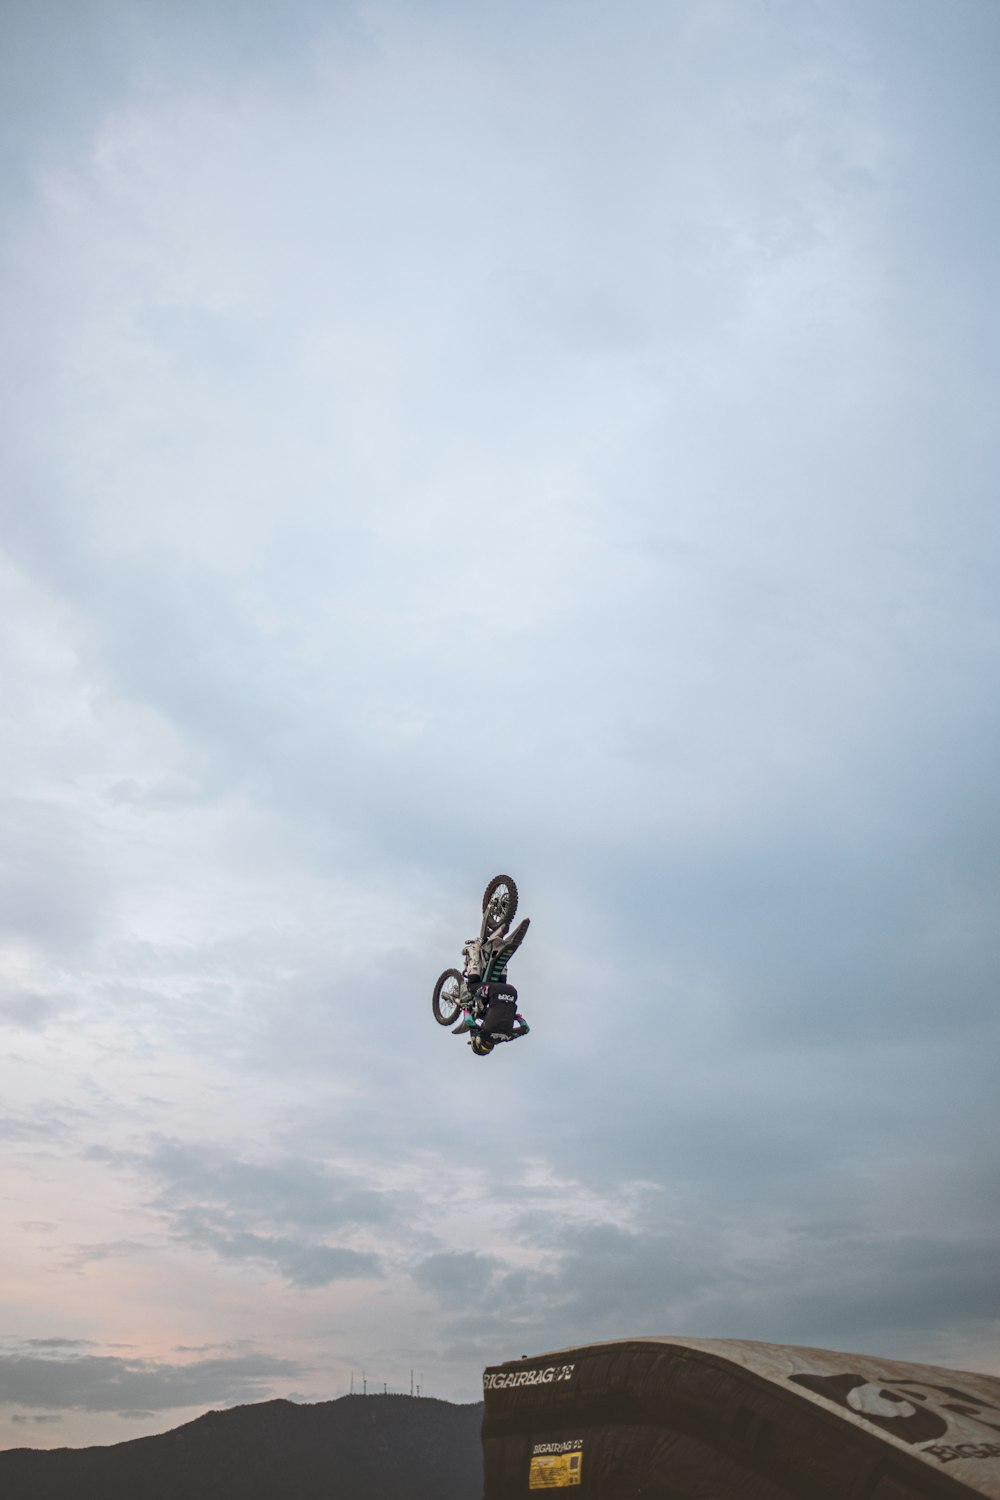 Ein Mann, der auf einem Motorrad durch die Luft fliegt